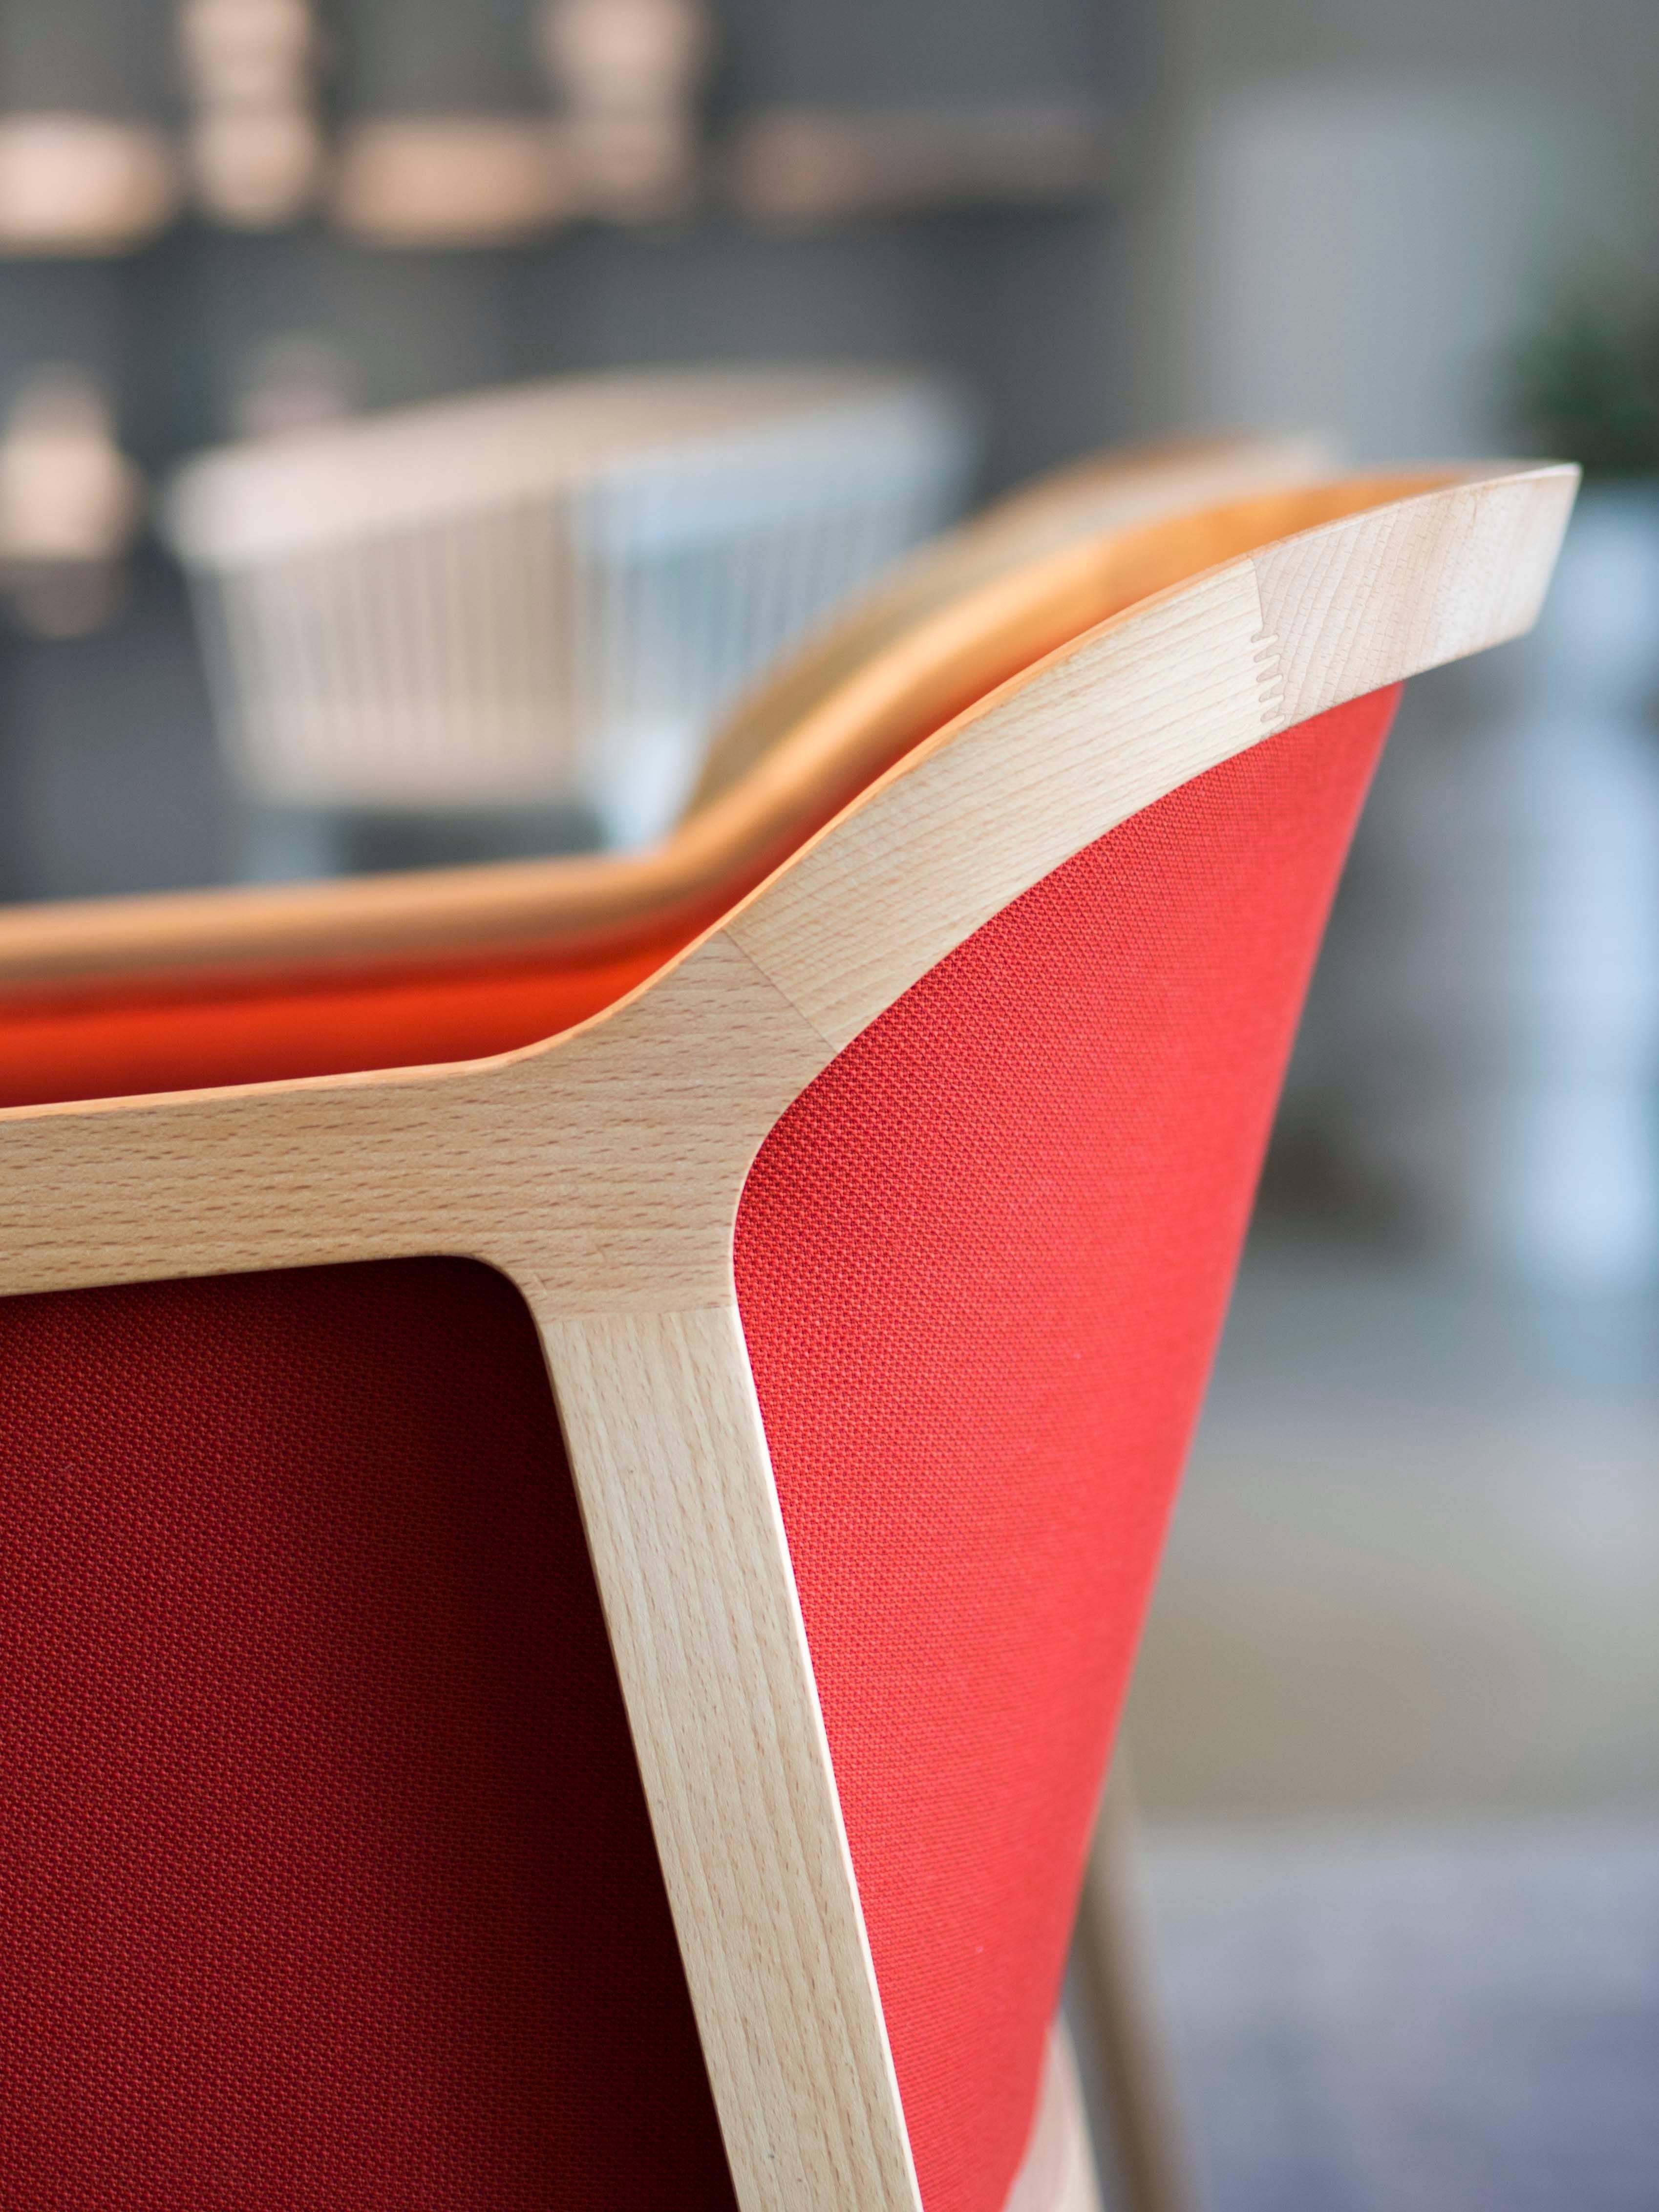 Vienna soft ist ein außergewöhnlich komfortabler und eleganter Sessel für den Essbereich, entworfen von Emmanuel Gallina, der gerne Brancusi zitiert, wenn er sagt, dass 